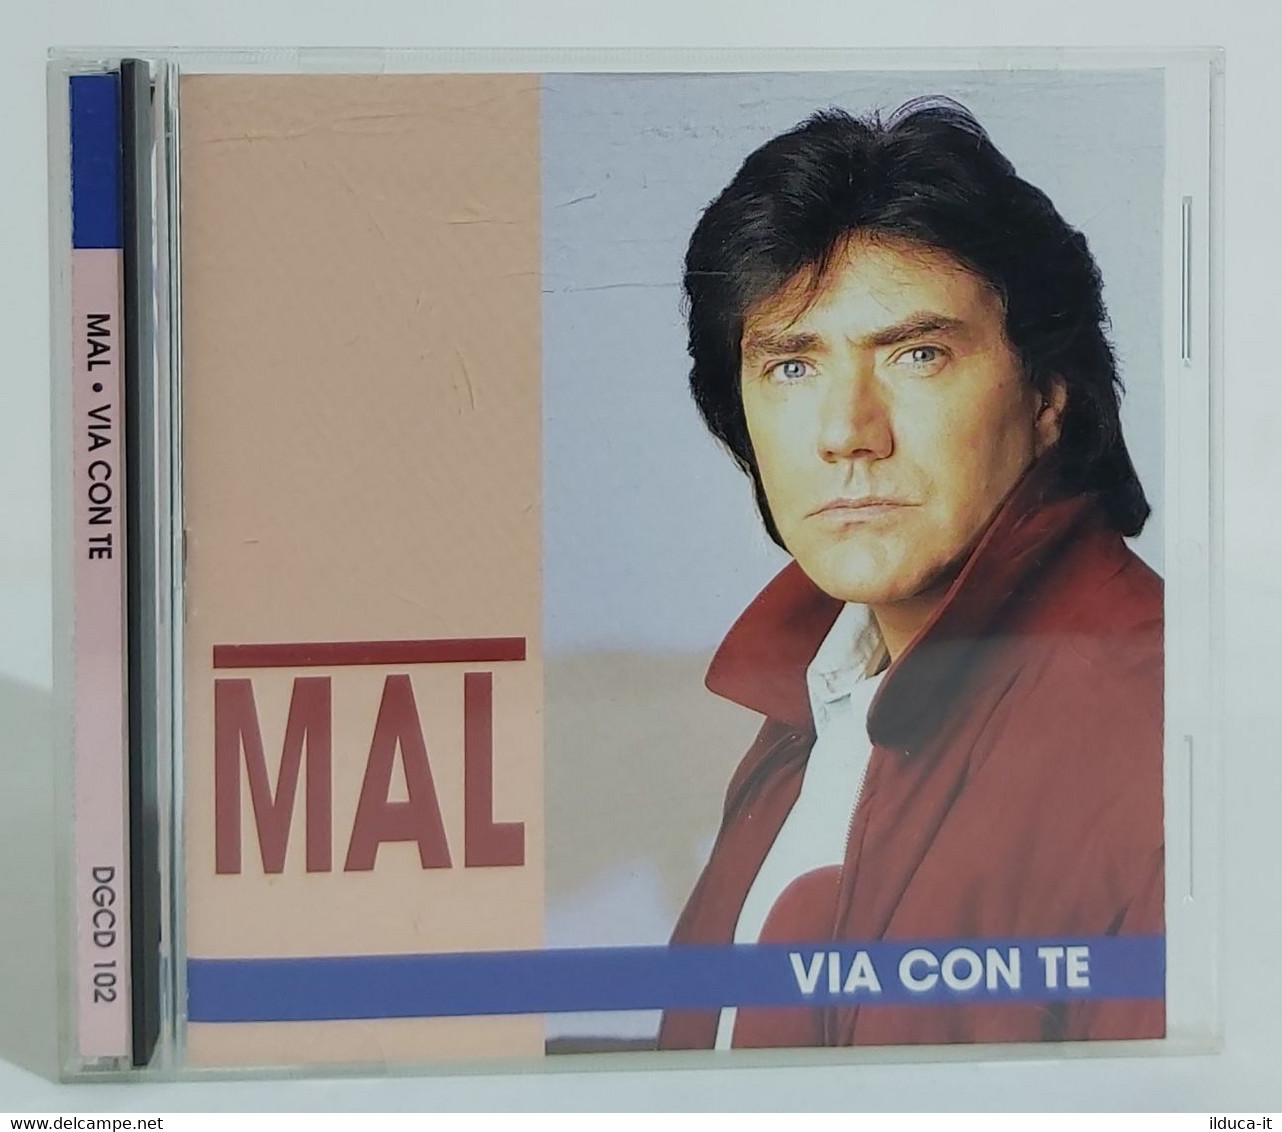 I102309 CD - Mal - Via Con Te - Duck Record 1994 - Sonstige - Italienische Musik